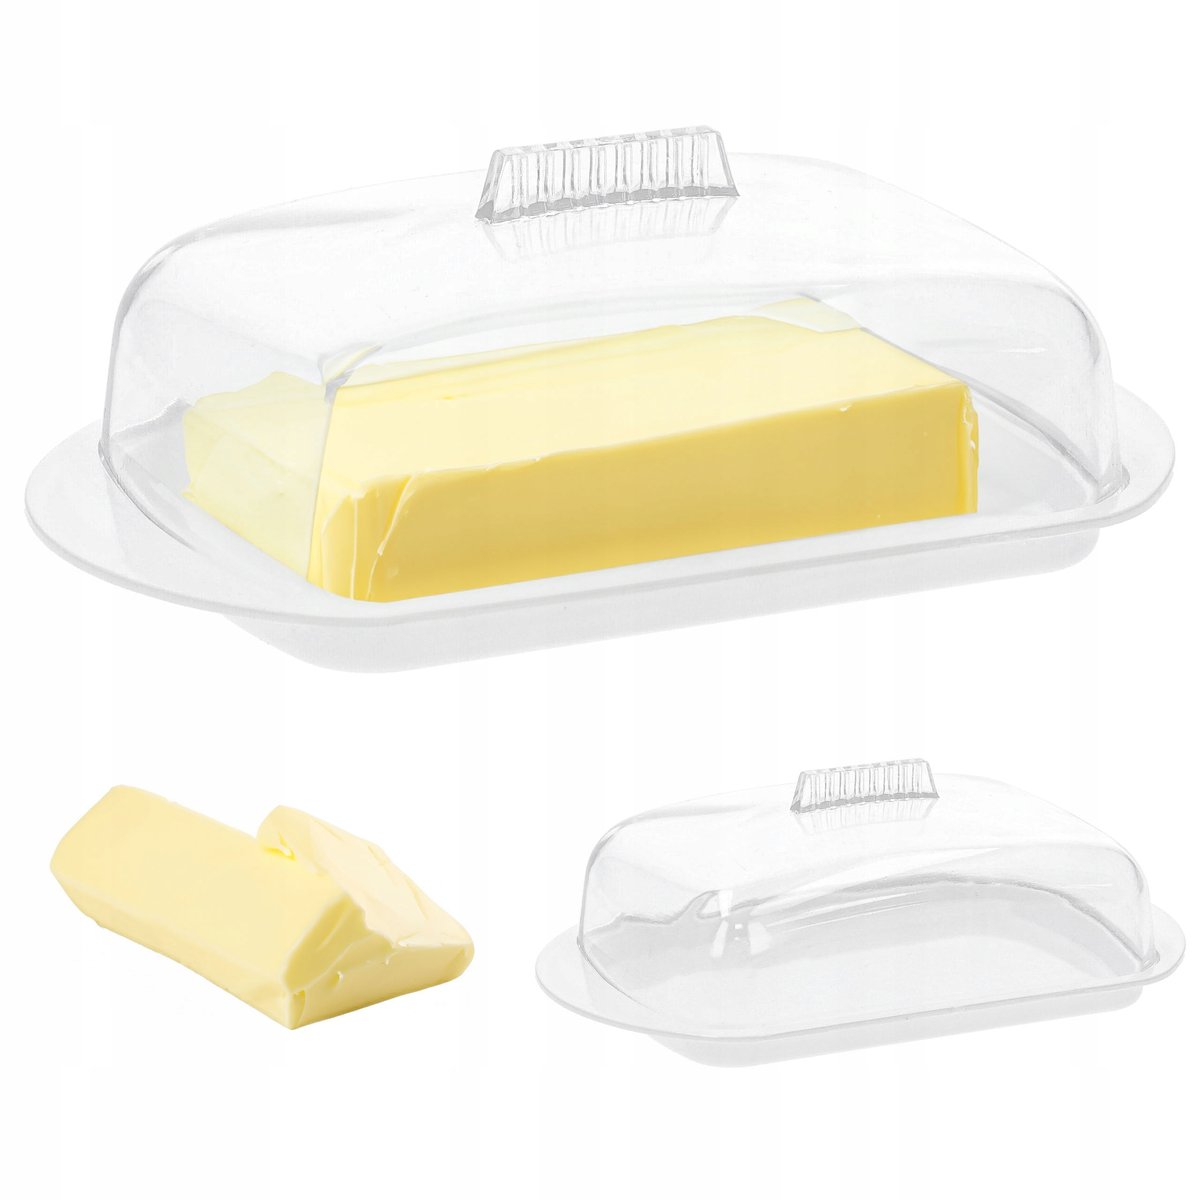 Zdjęcia - Maselniczka Maselnica  pojemnik na masło z pokrywą biały 10x17 cm